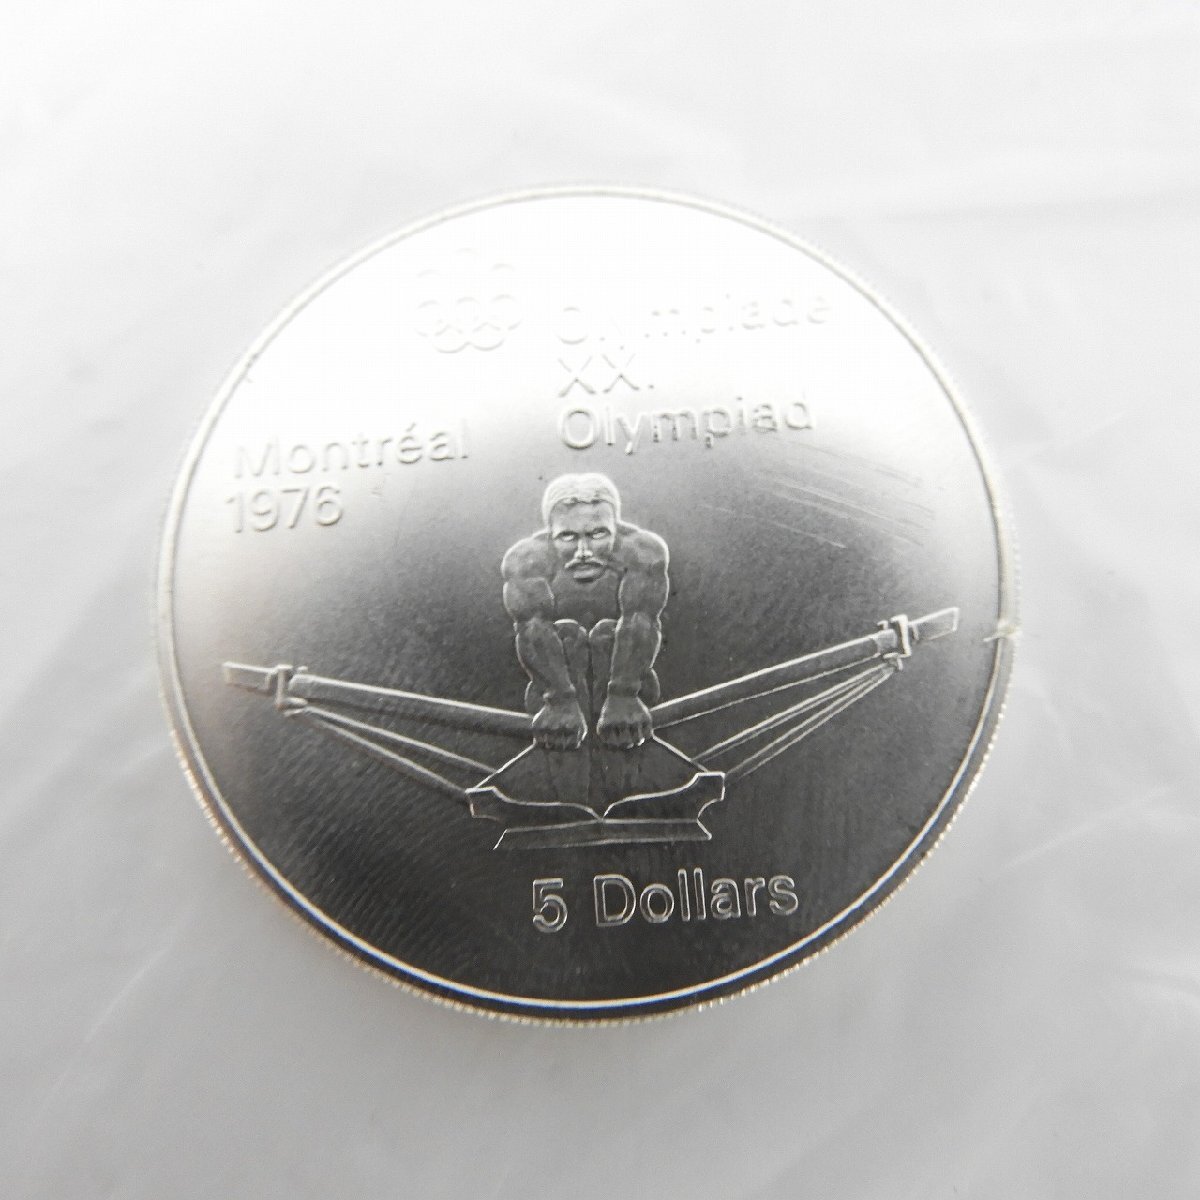 【記念コイン】カナダモントリオールオリンピック 1976年記念銀貨 10ドル+5ドル 合計4枚セット 11523175 0318_画像6